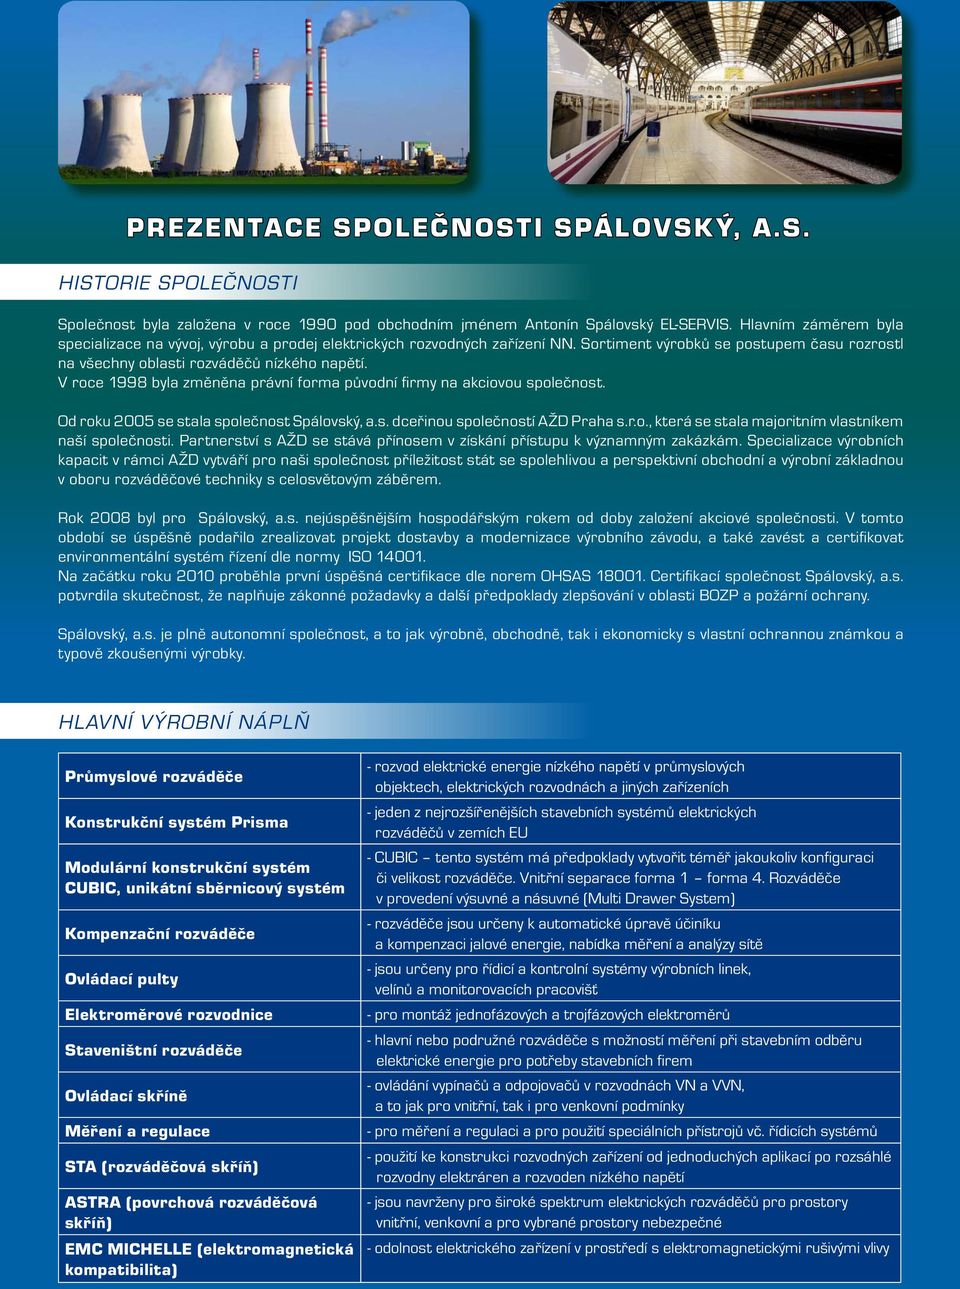 V roce 1998 byla změněna právní forma původní firmy na akciovou společnost. Od roku 2005 se stala společnost Spálovský, a.s. dceřinou společností AŽD Praha s.r.o., která se stala majoritním vlastníkem naší společnosti.